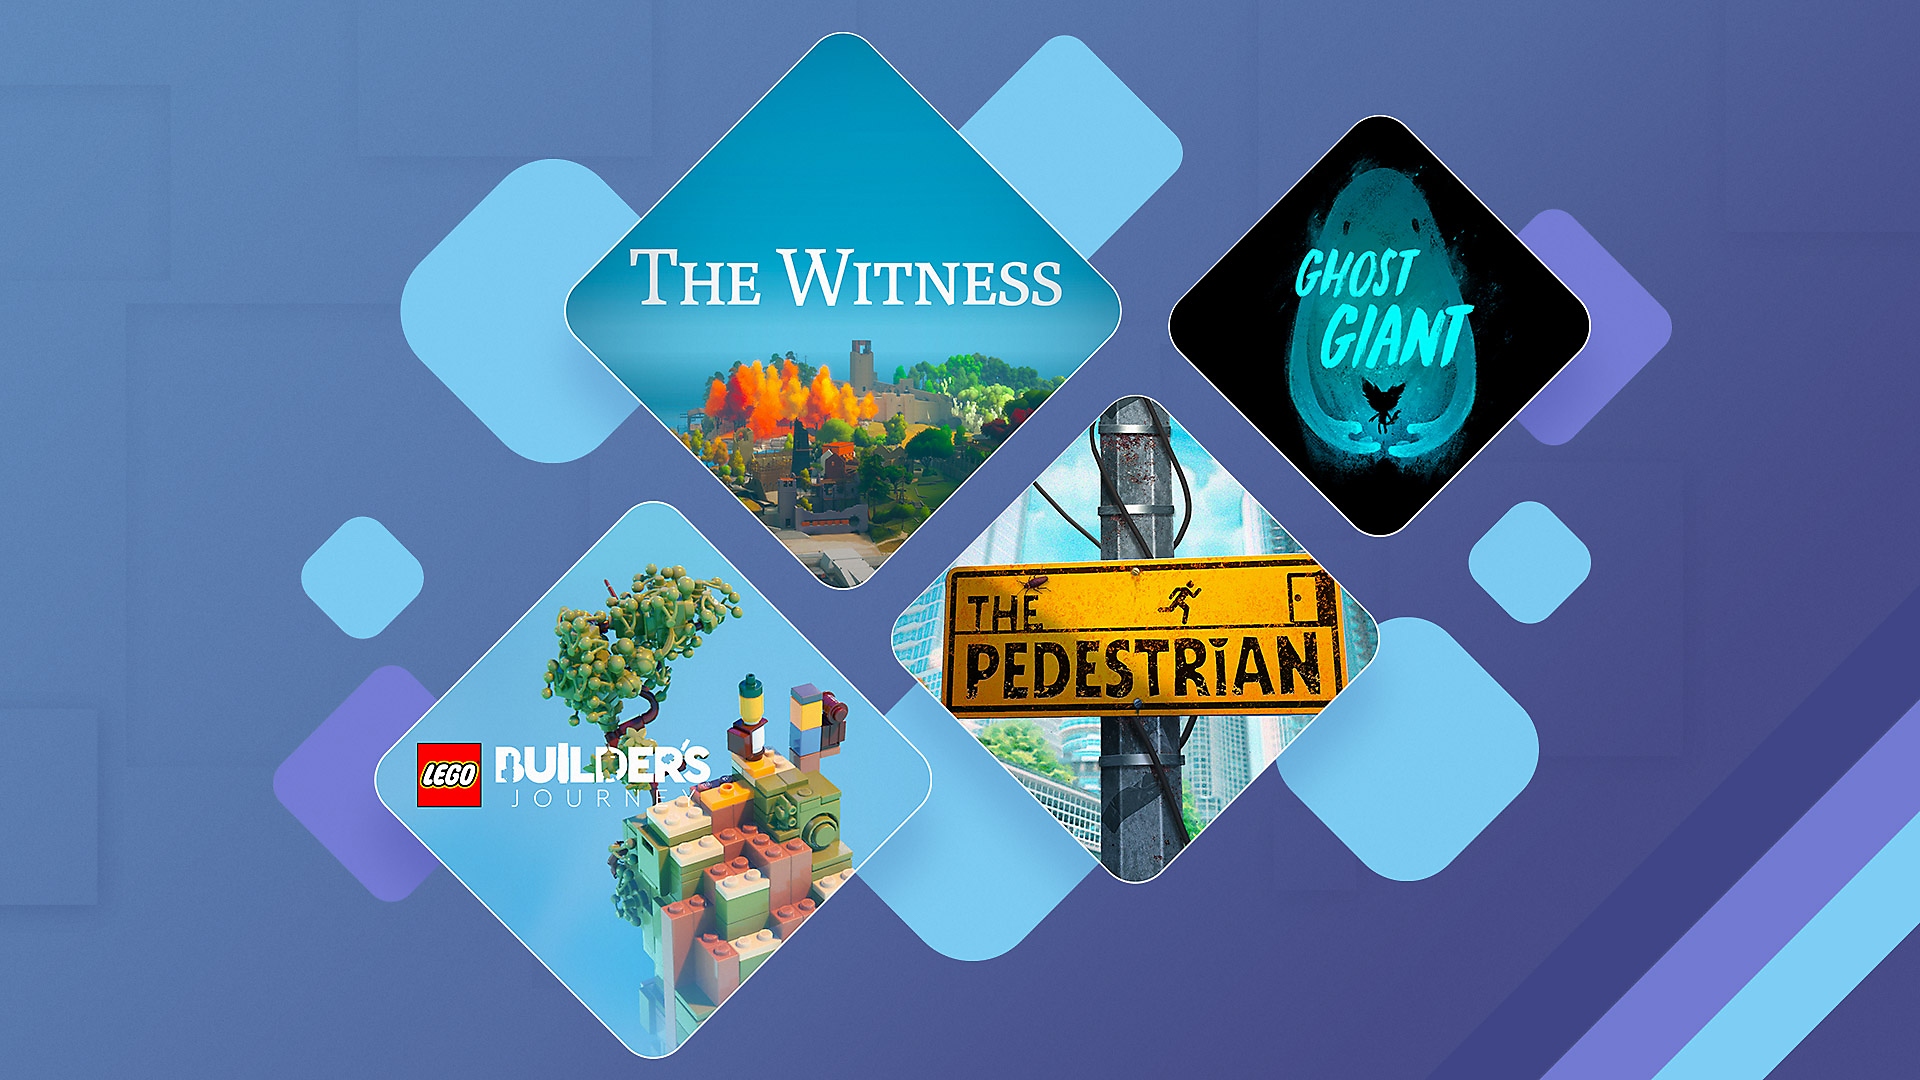 Imagem promocional dos melhores jogos de quebra-cabeça para PS4 e PS5 incluindo The Witness, Ghost Giant, LEGO Builder's Journey e The Pedestrian.